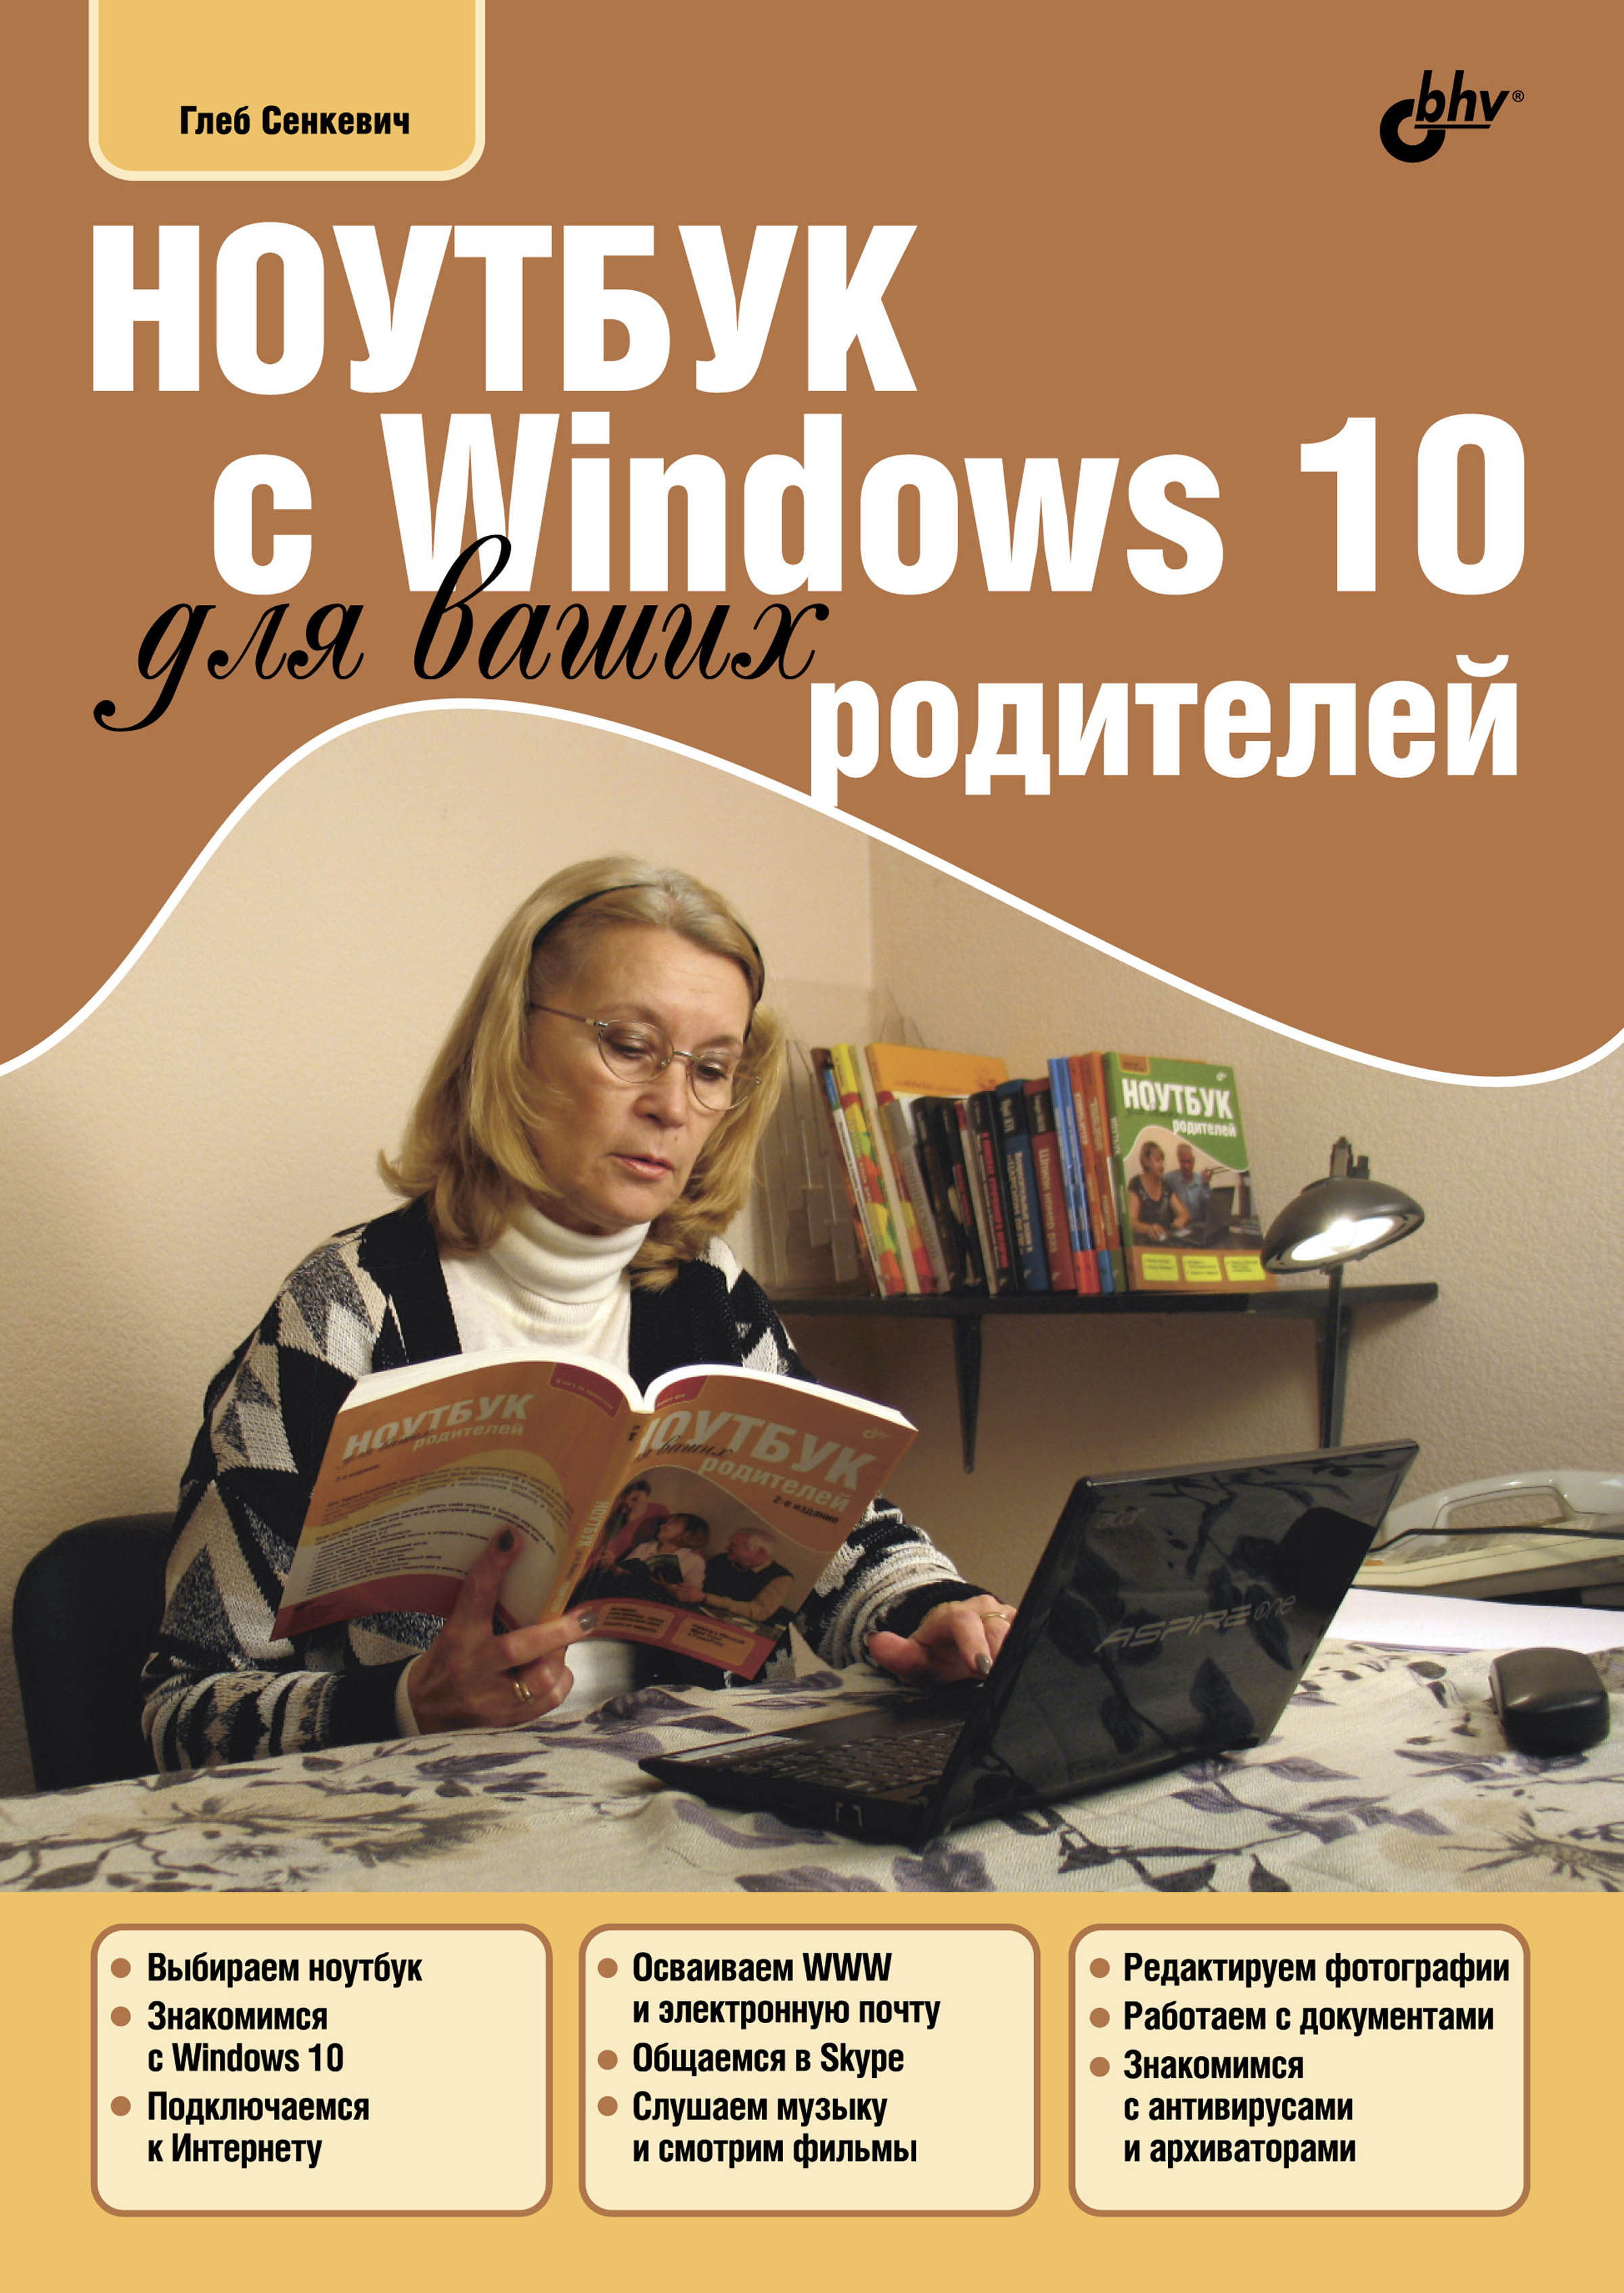 Книга  Ноутбук с Windows 10 для ваших родителей созданная Г. Е. Сенкевич может относится к жанру интернет, книги о компьютерах, ОС и сети, программы. Стоимость электронной книги Ноутбук с Windows 10 для ваших родителей с идентификатором 23878141 составляет 264.00 руб.